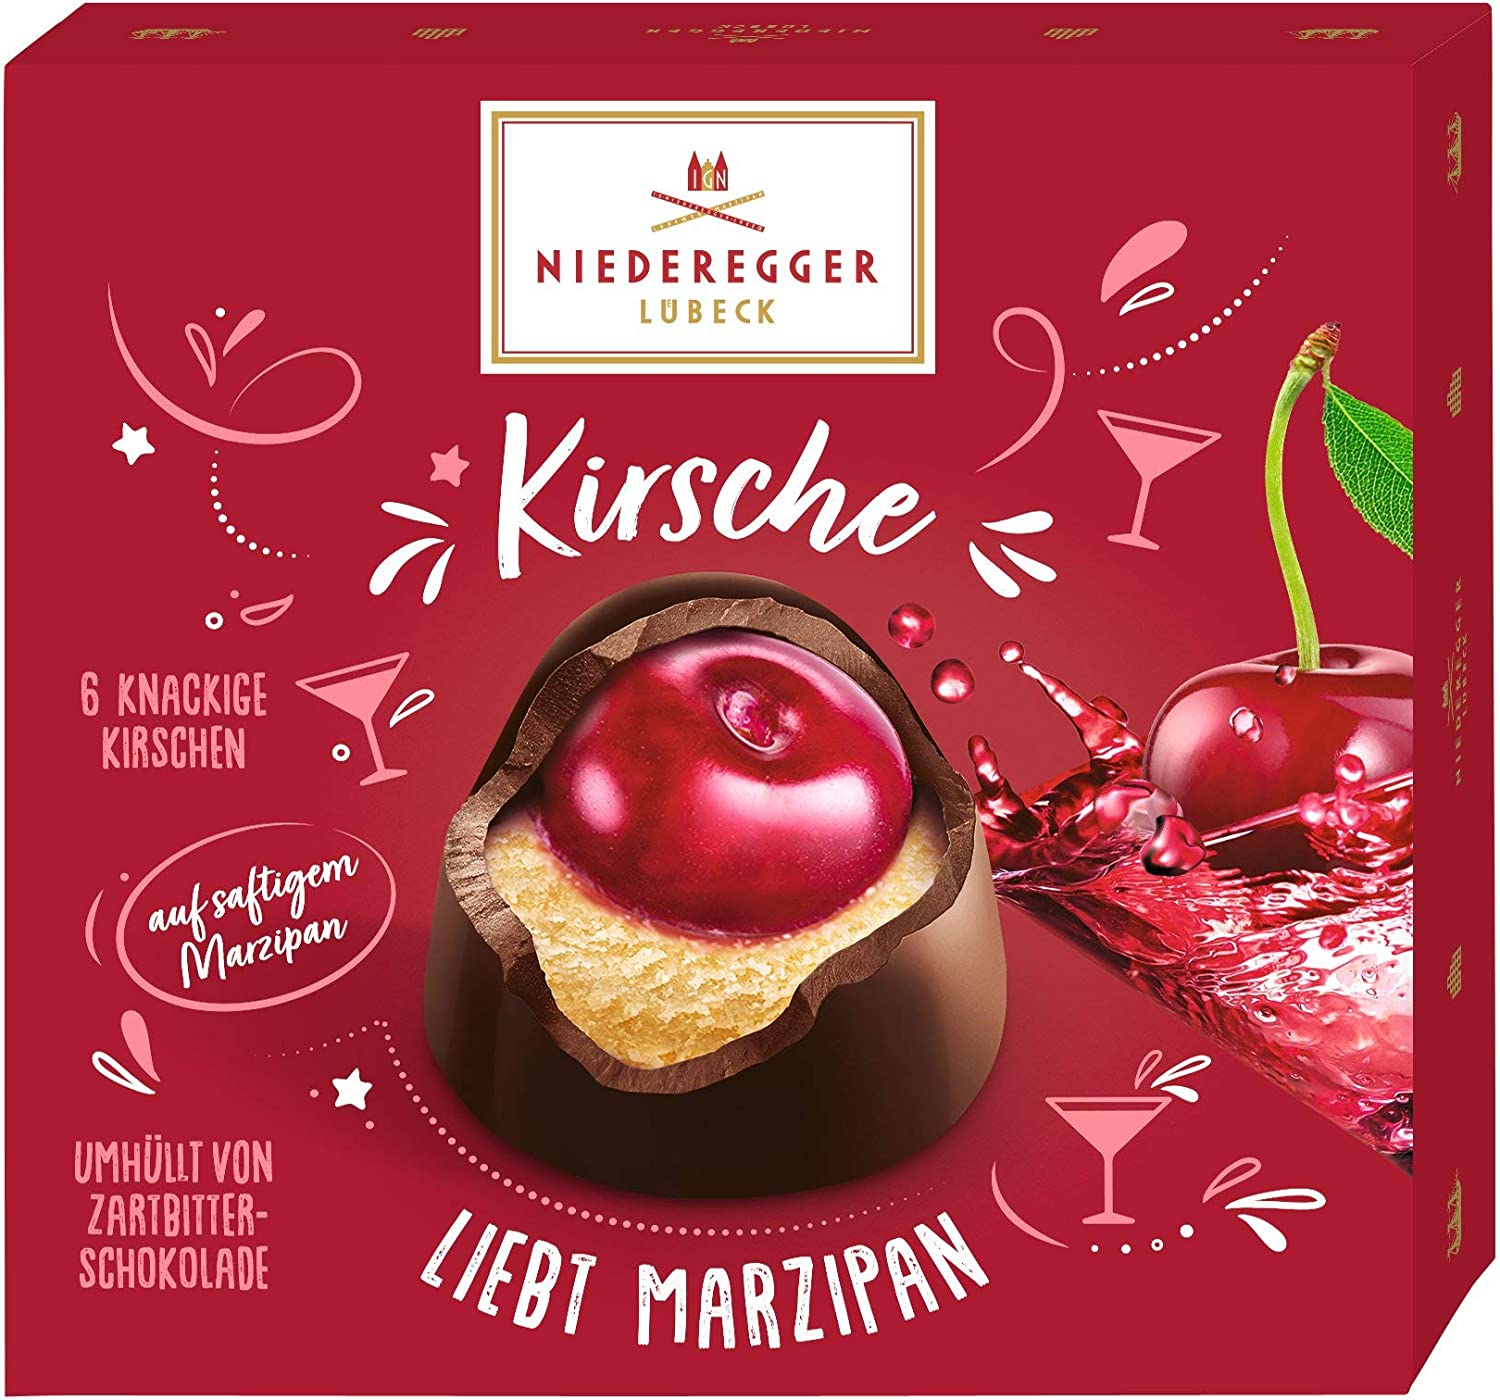 Niederegger Kirsche (Marzipan and Cherry)